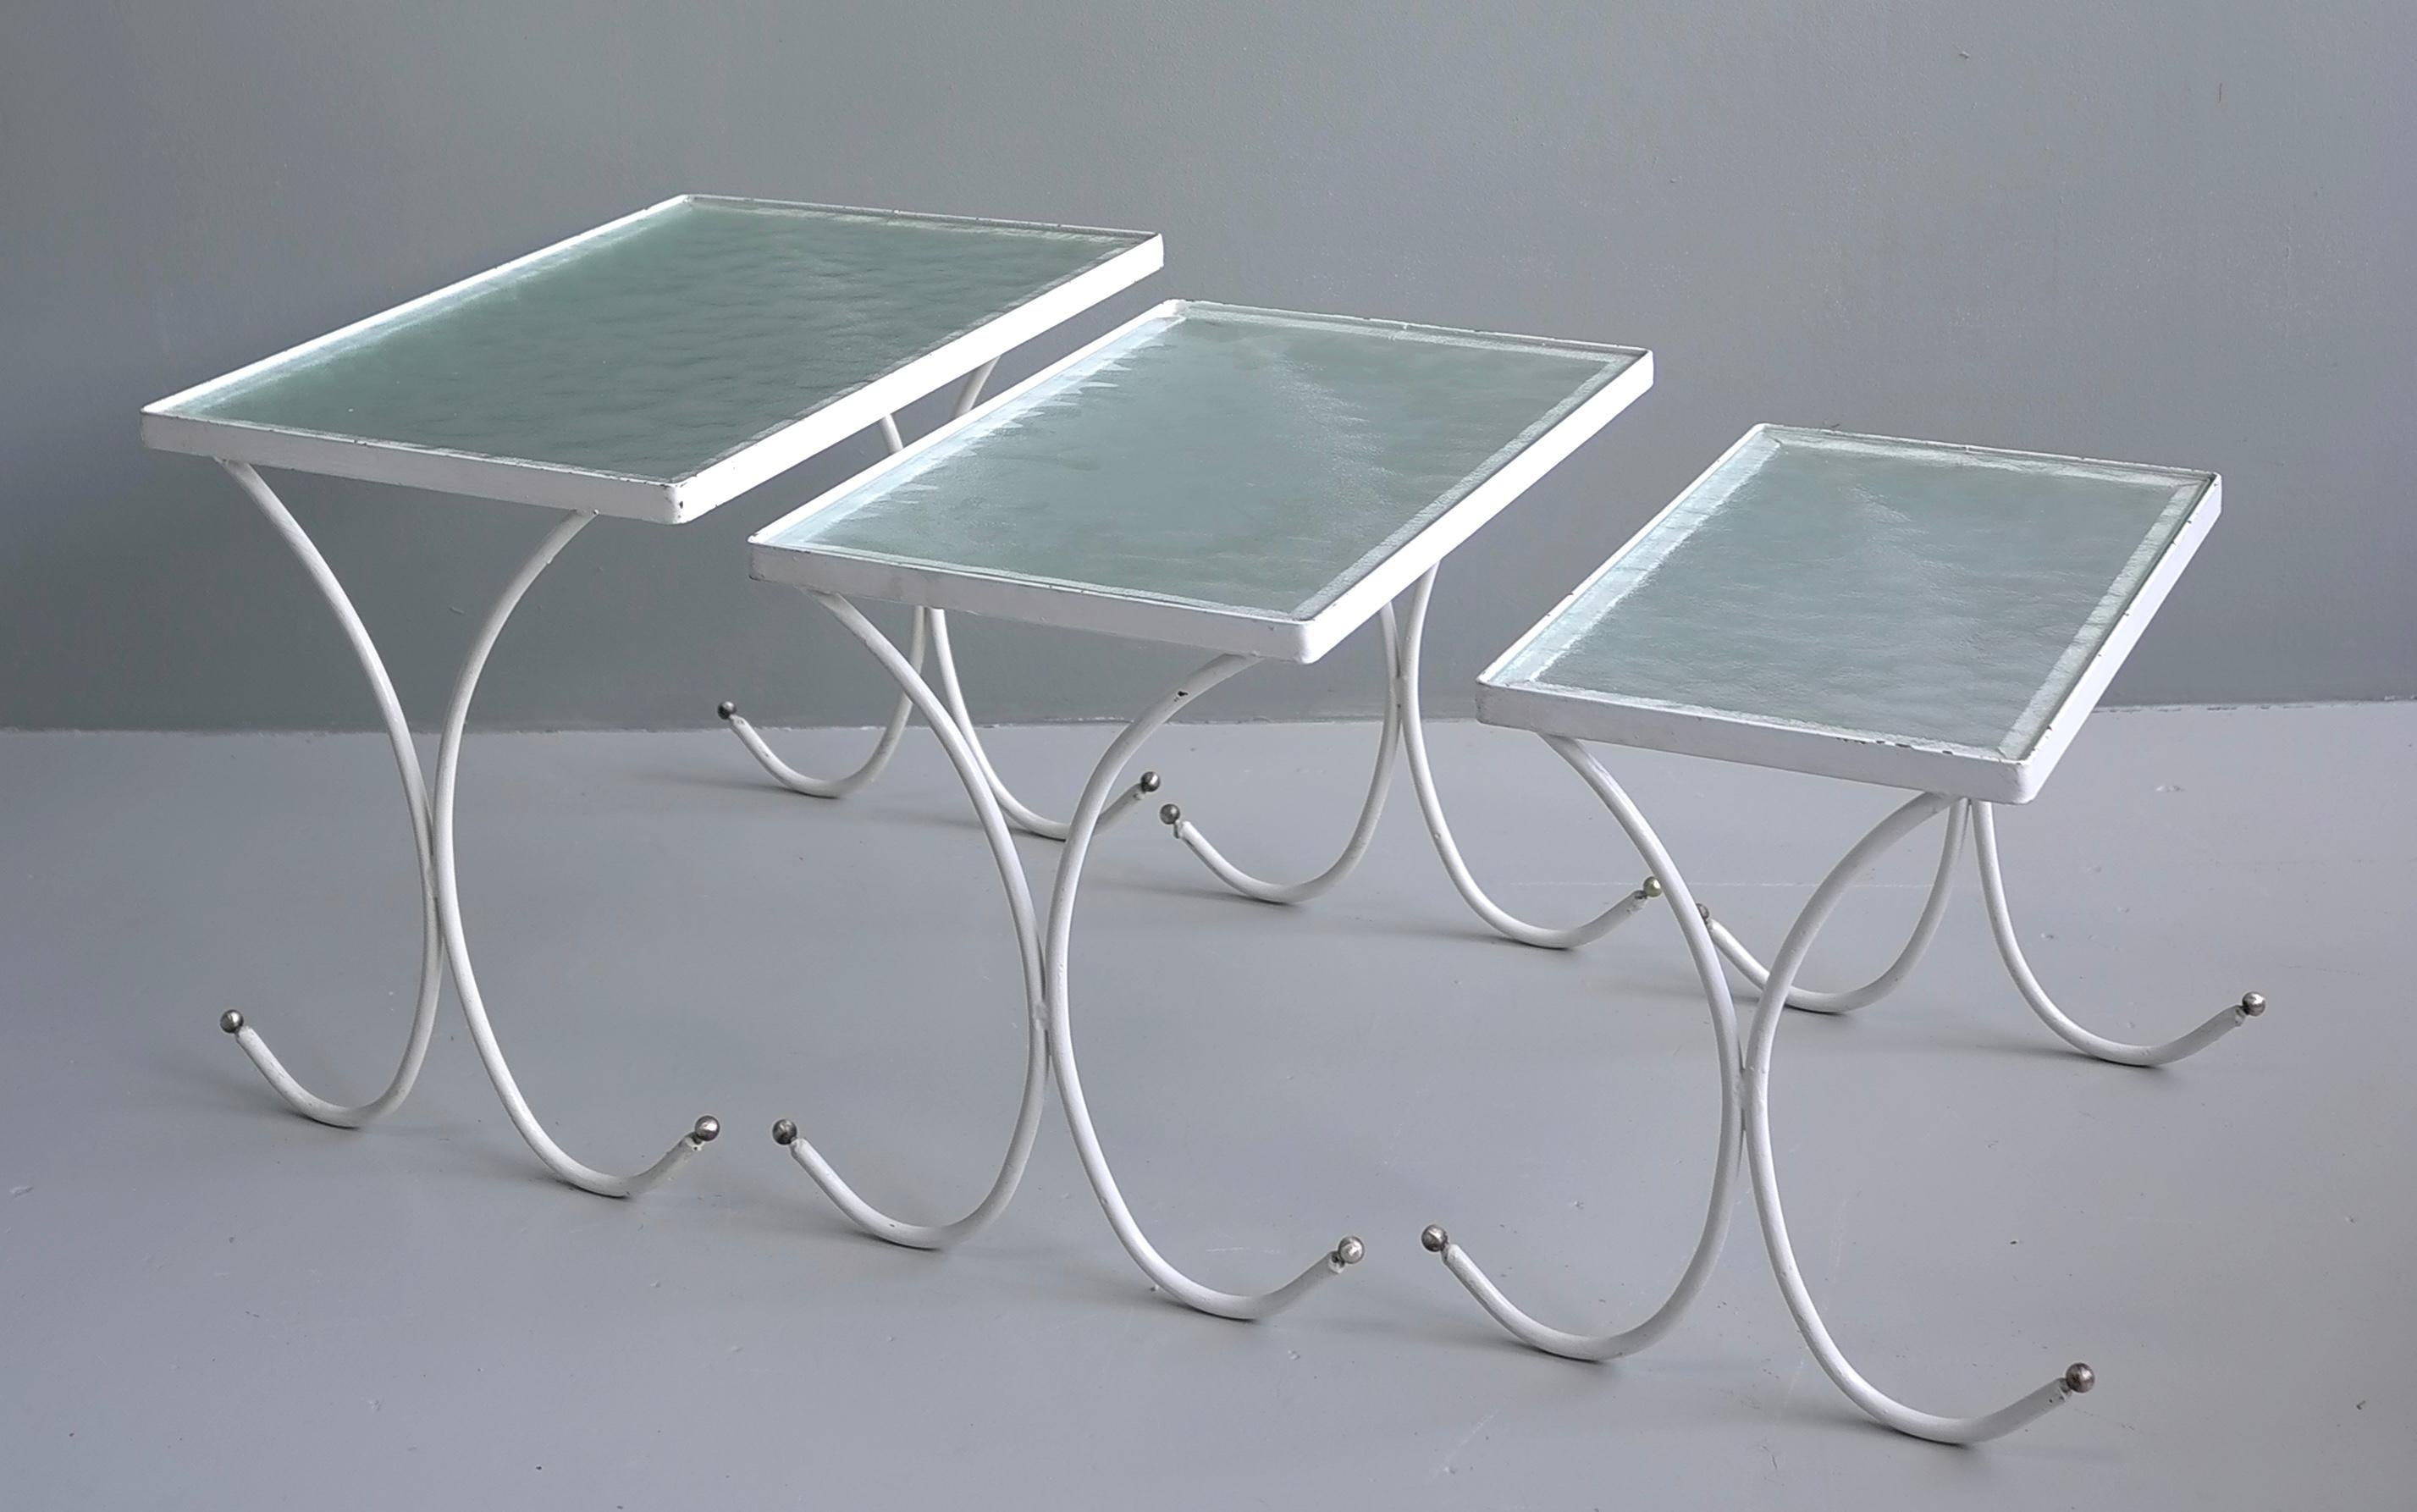 Ensemble de trois tables gigognes en métal blanc, France années 1950

Les tables ont des cadres en métal avec des extrémités à boule en laiton et des plateaux en verre.